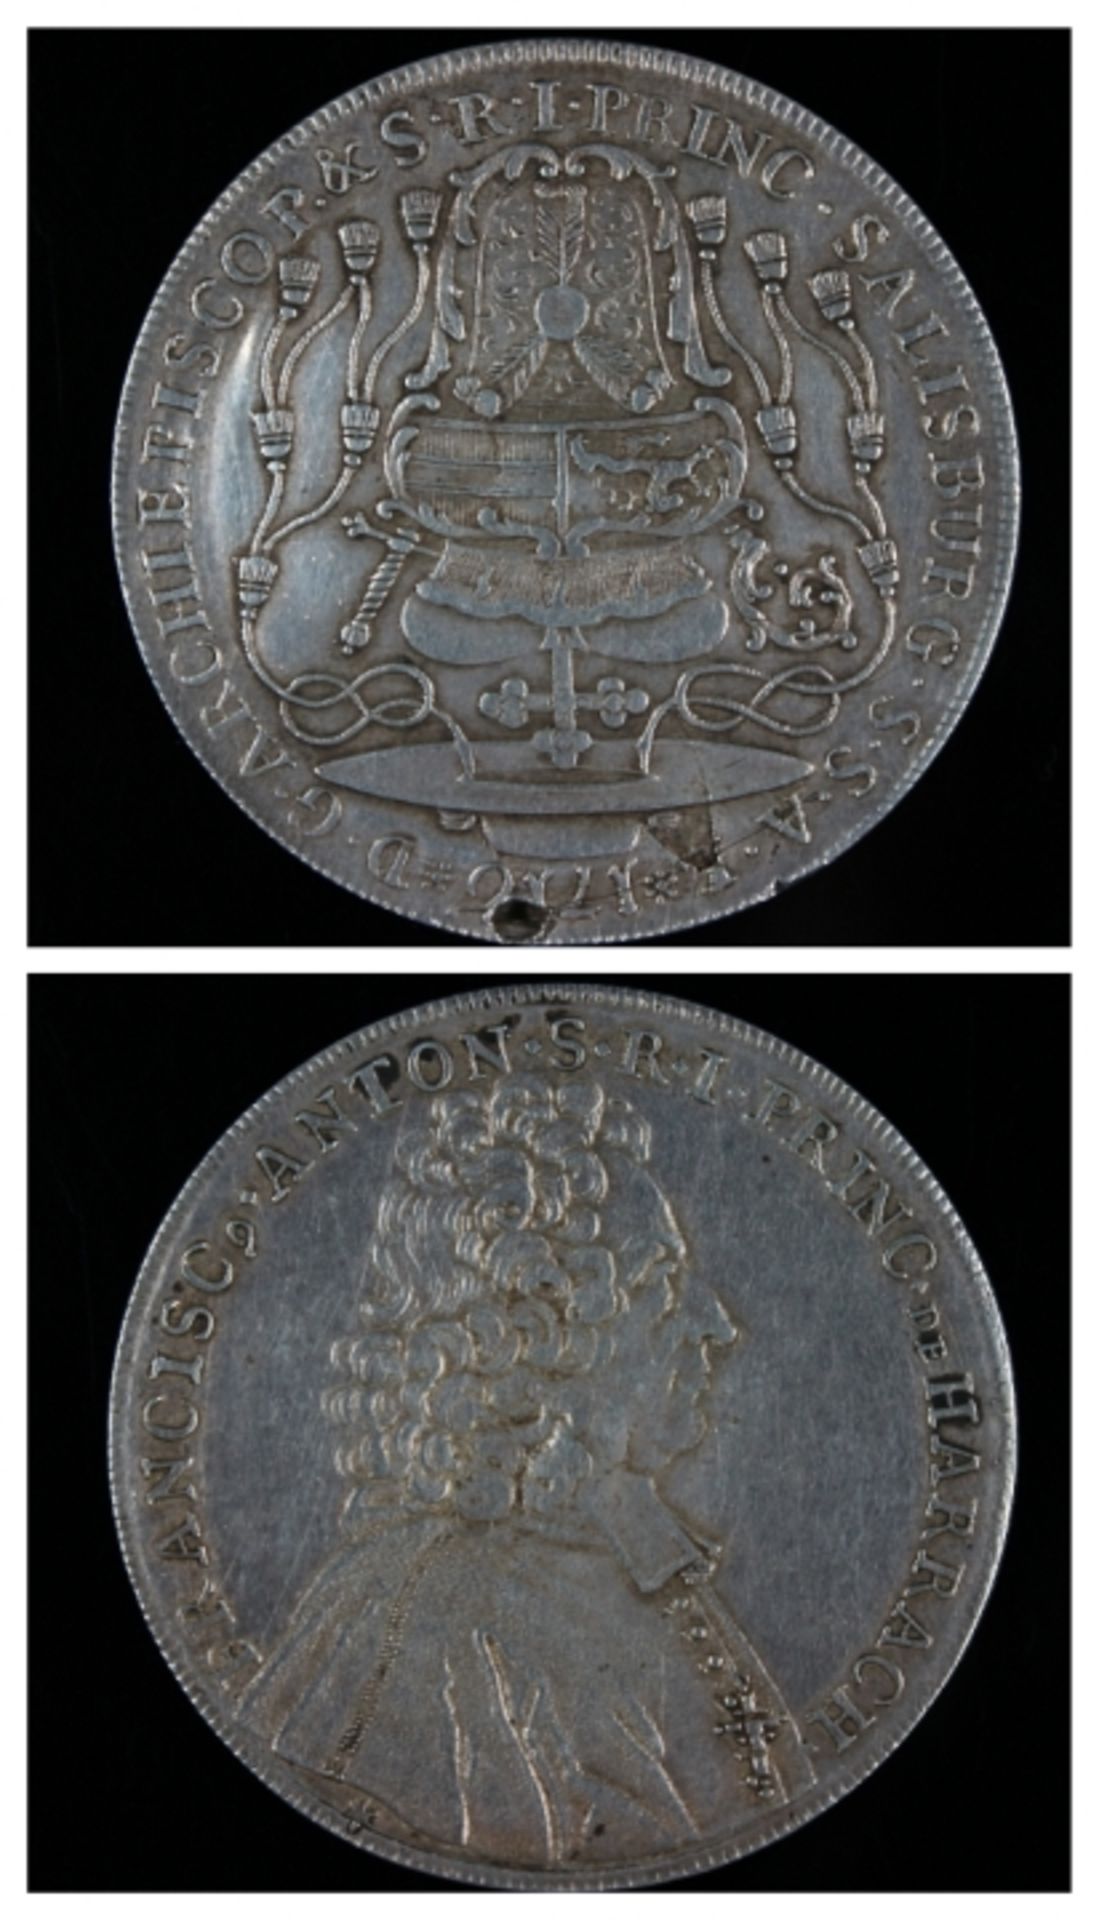 Silb. Schraubtaler - Österreich datiert 1716, Franciscus Anton S.R.I, Princ de Harrach, Brustbild